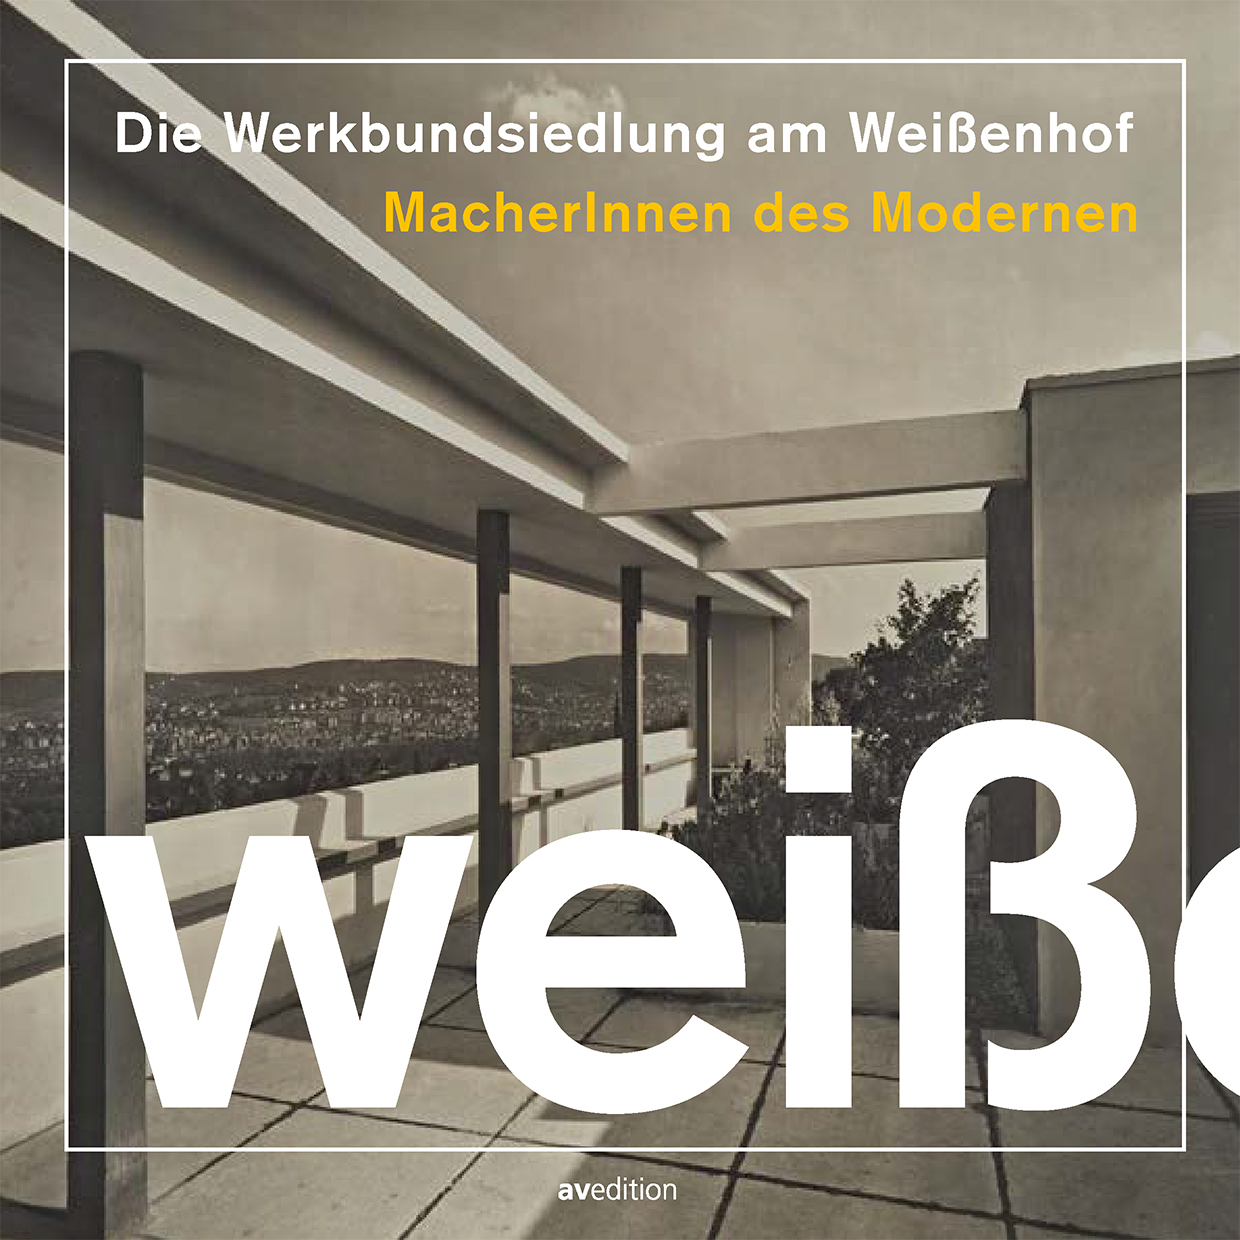 Die Werkbundsiedlung am Weißenhof – MacherInnen des Modernen